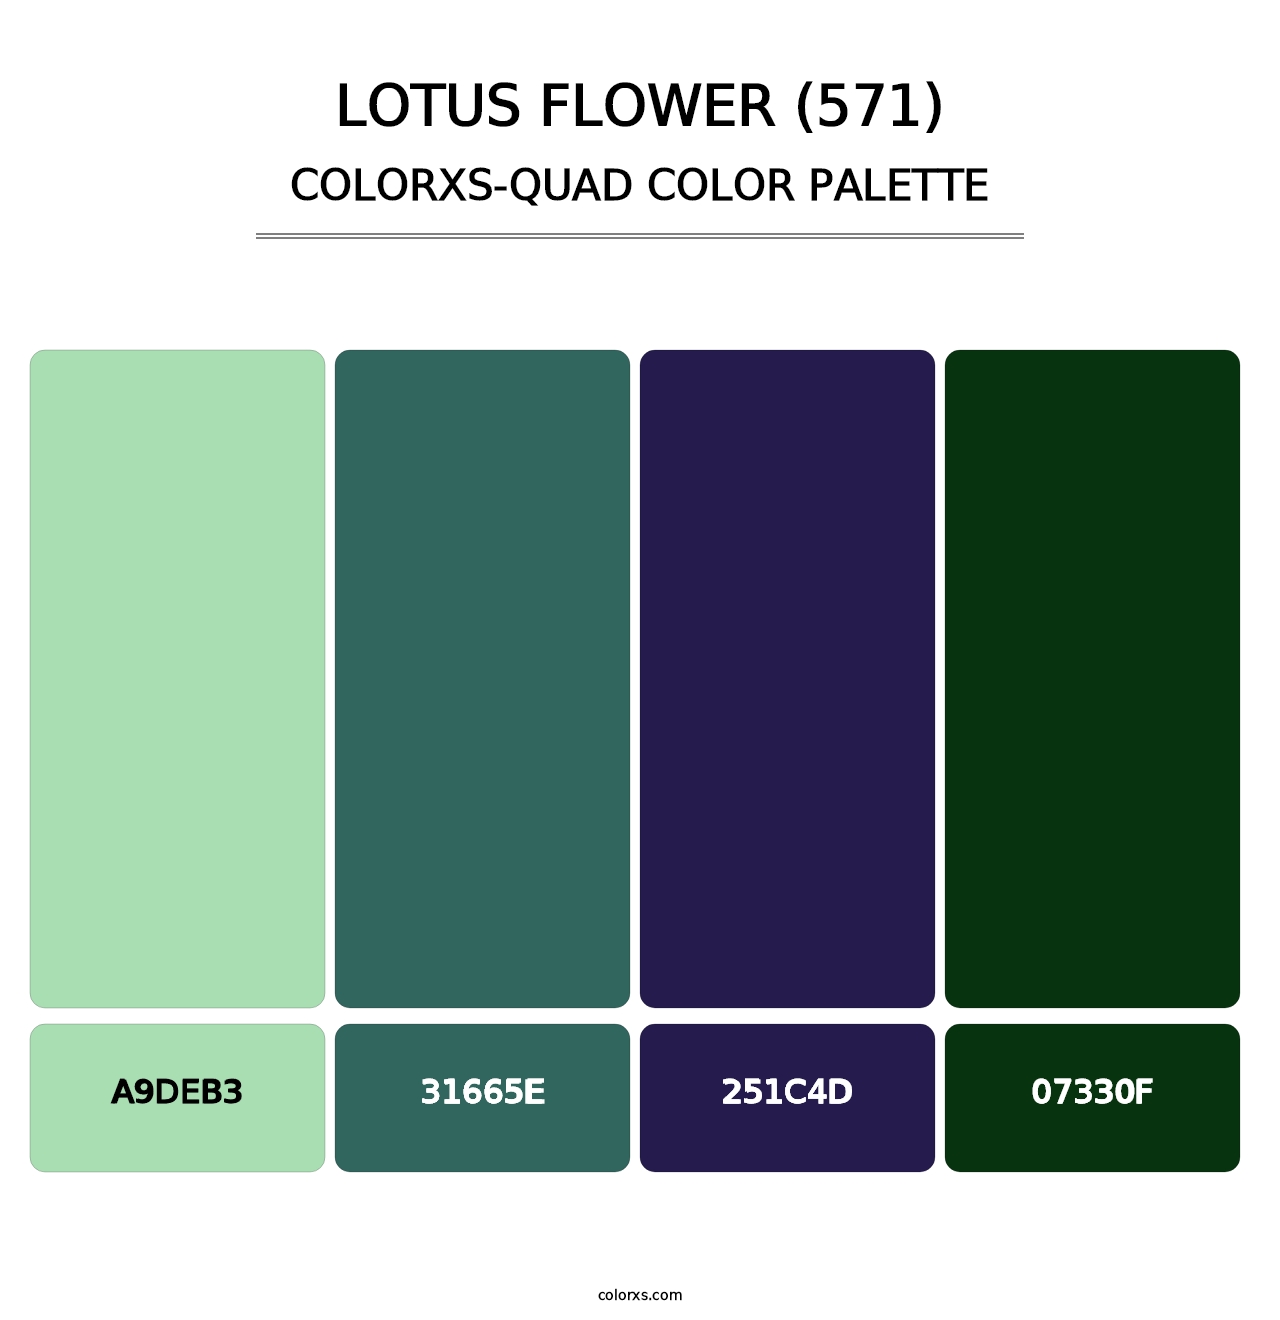 Lotus Flower (571) - Colorxs Quad Palette